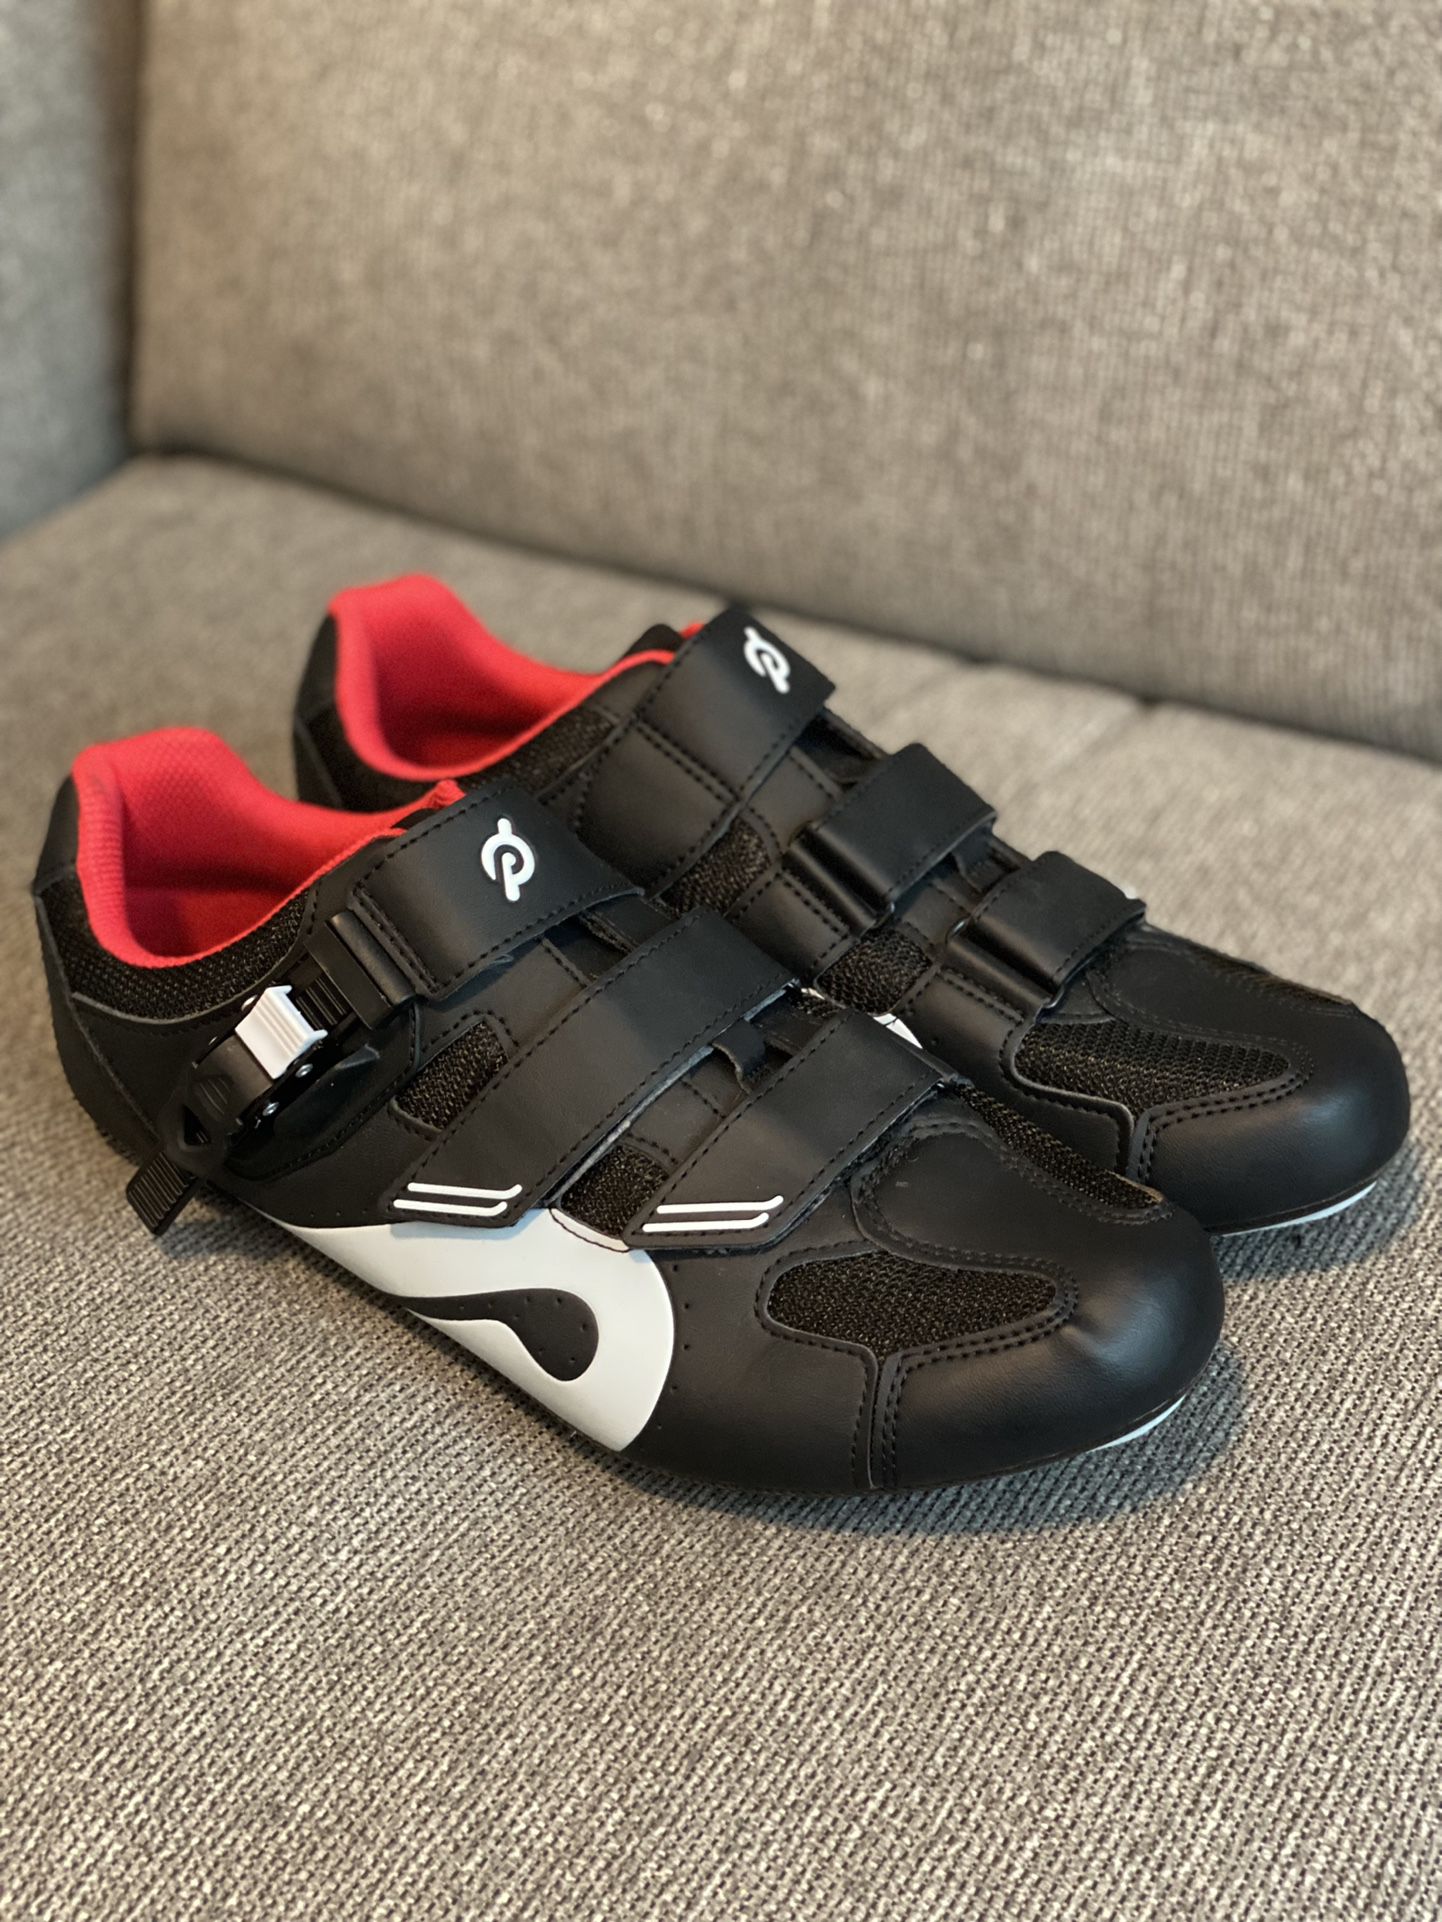 Peloton Cycling Shoes Size 46/12